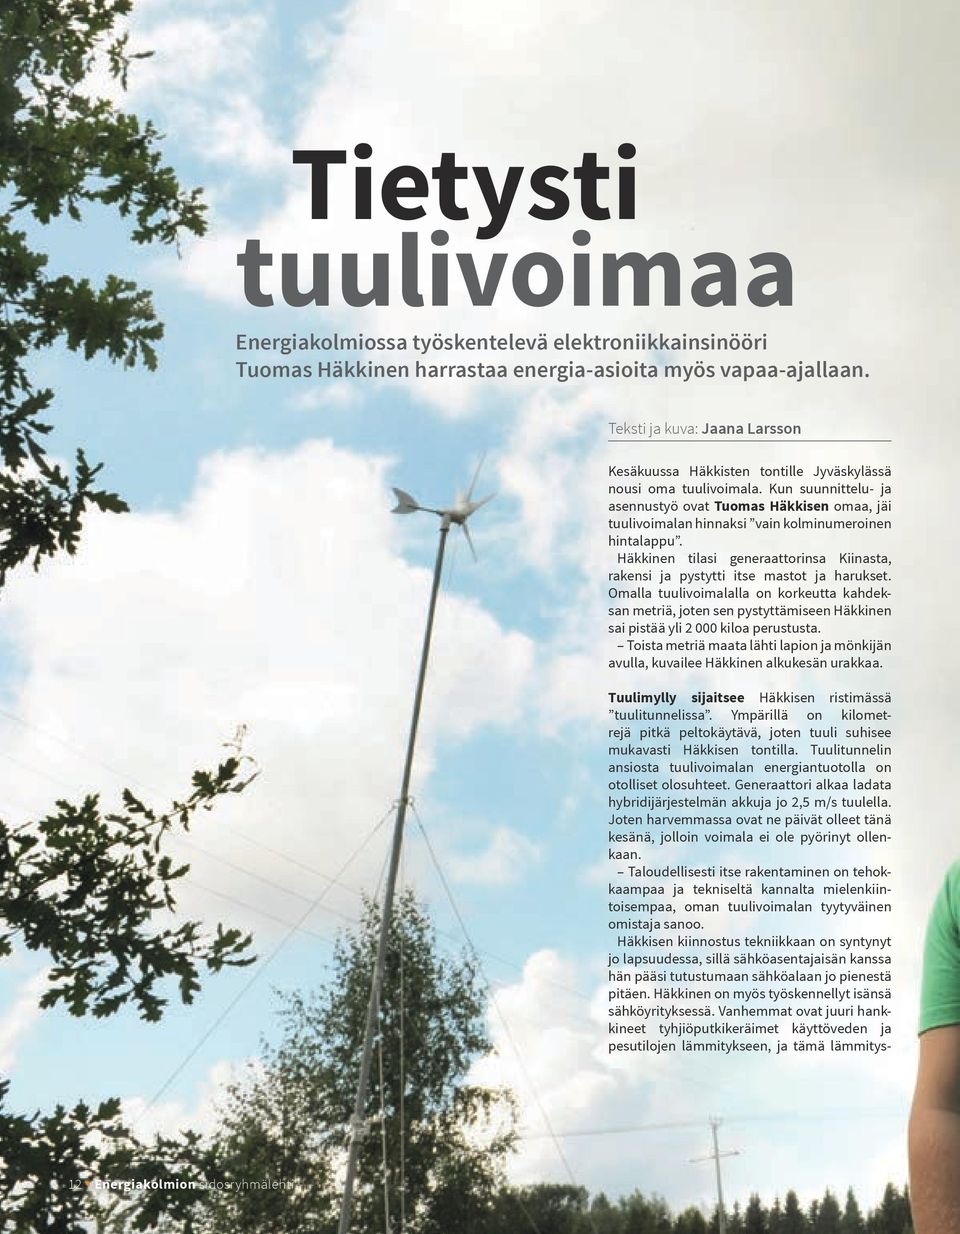 Kun suunnittelu- ja asennustyö ovat Tuomas Häkkisen omaa, jäi tuulivoimalan hinnaksi vain kolminumeroinen hintalappu.